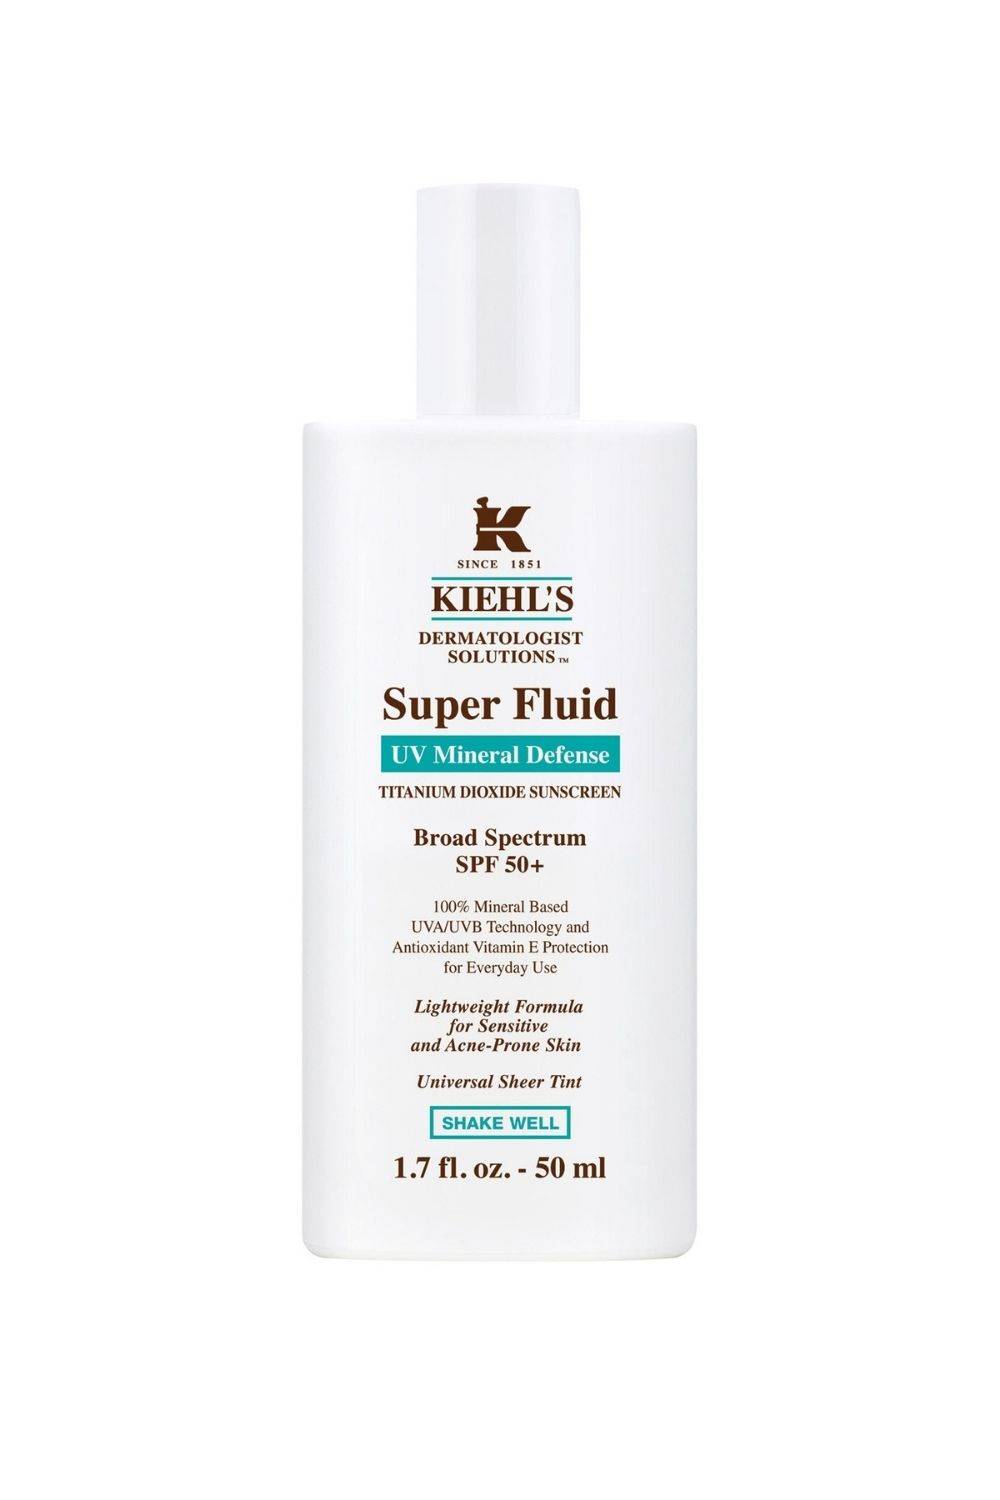  Ultra Light Daily UV Defense Mineral Sunscreen SPF 50 de Kiehl's.